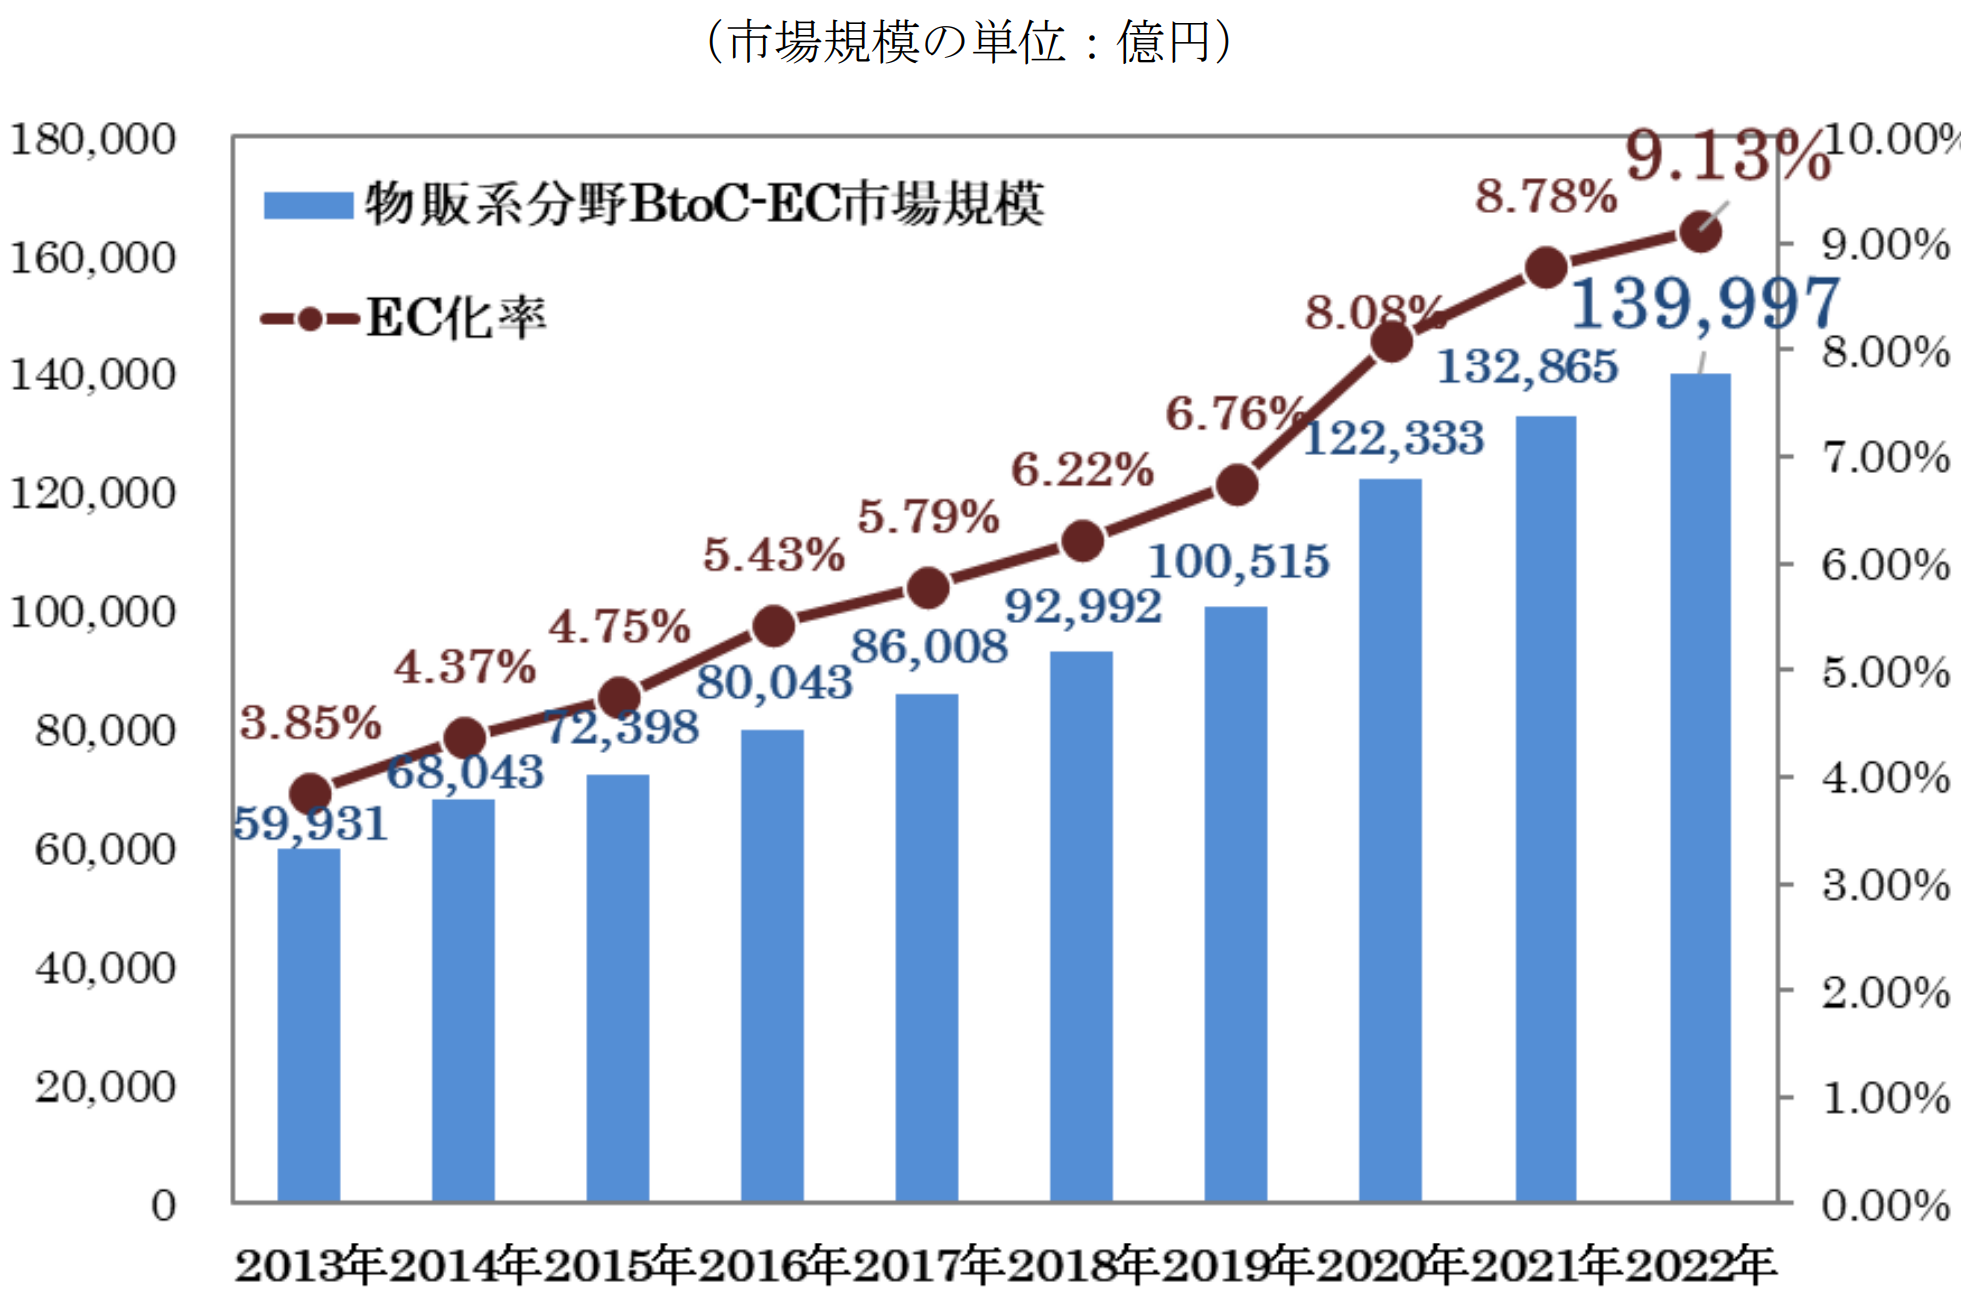 物販系分野のBtoC-EC市場規模及びEC化率の経年推移(2013-2022)